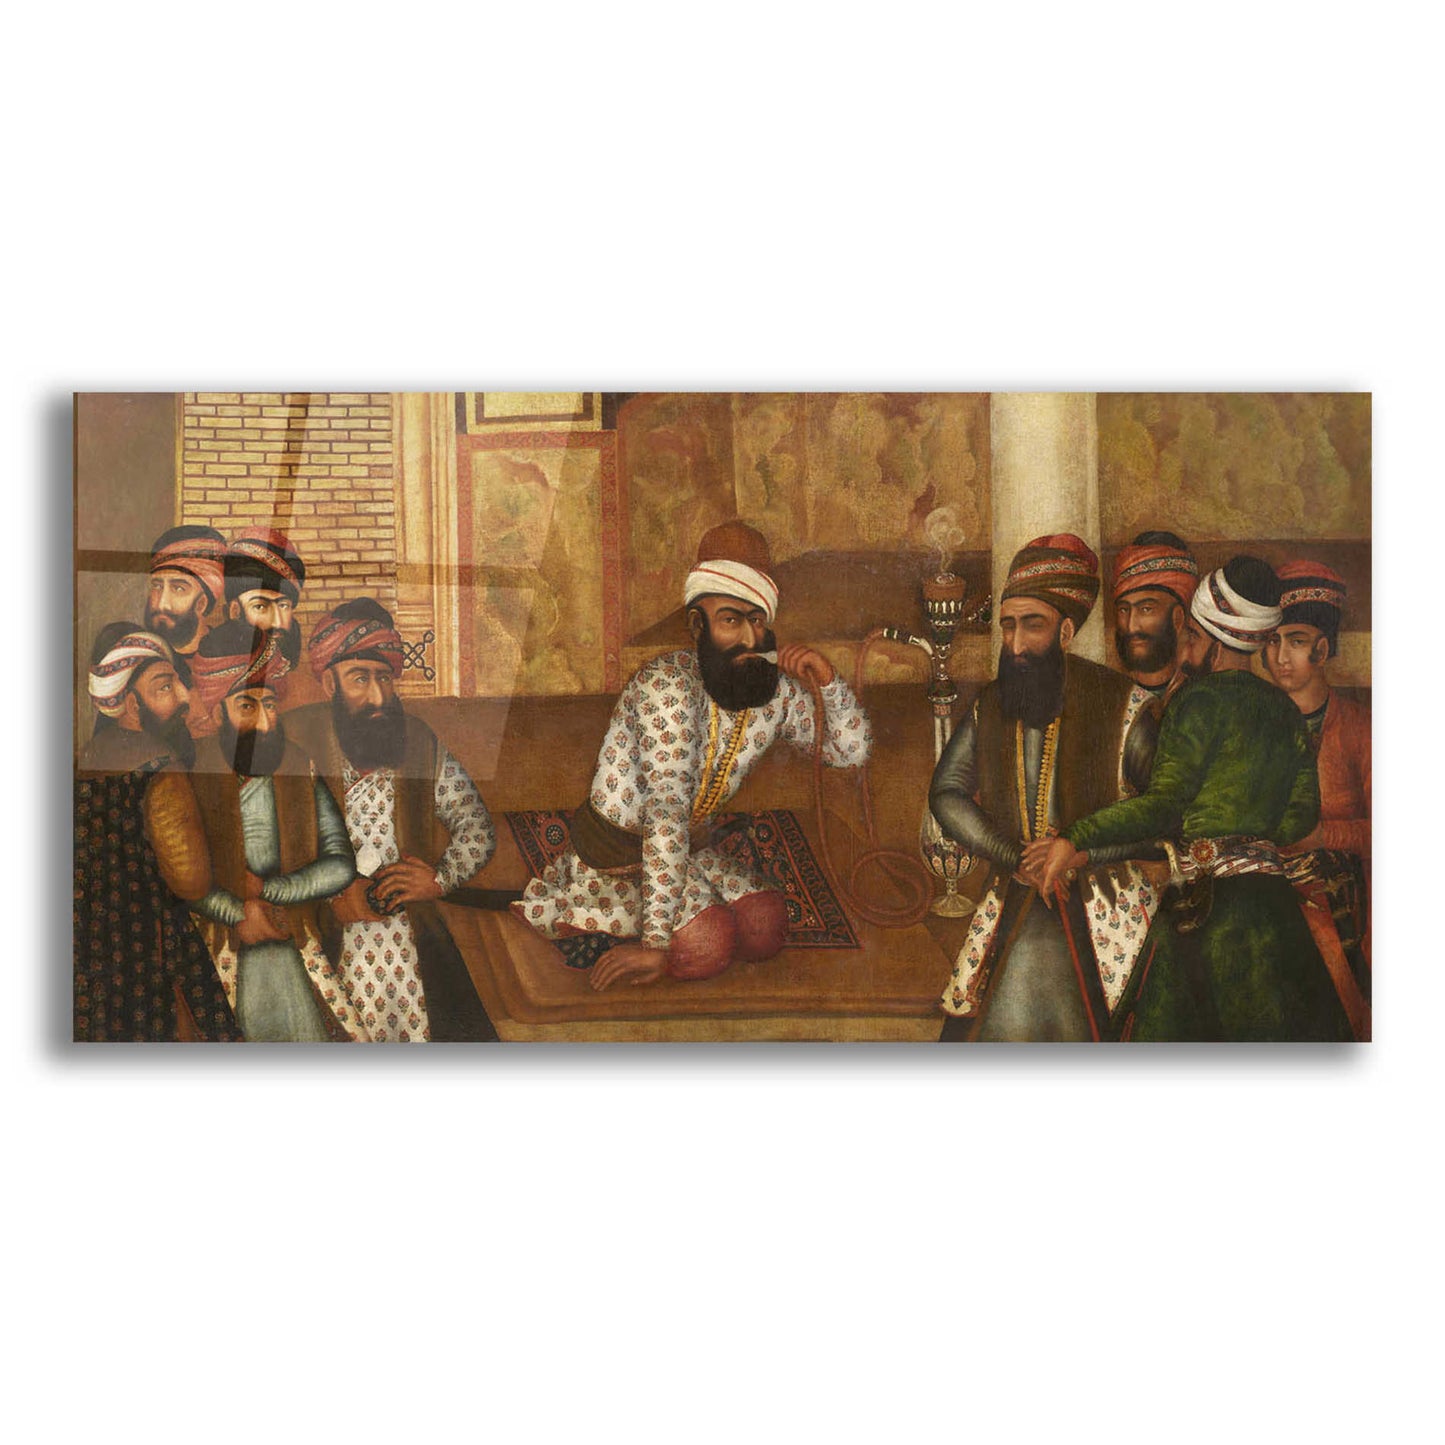 Epic Art 'The Royal Court of Karim Khan' by Mohammad Sadiq, Acrylic Glass Wall Art,24x12x1.1x0,40x20x1.74x0,60x30x1.74x0